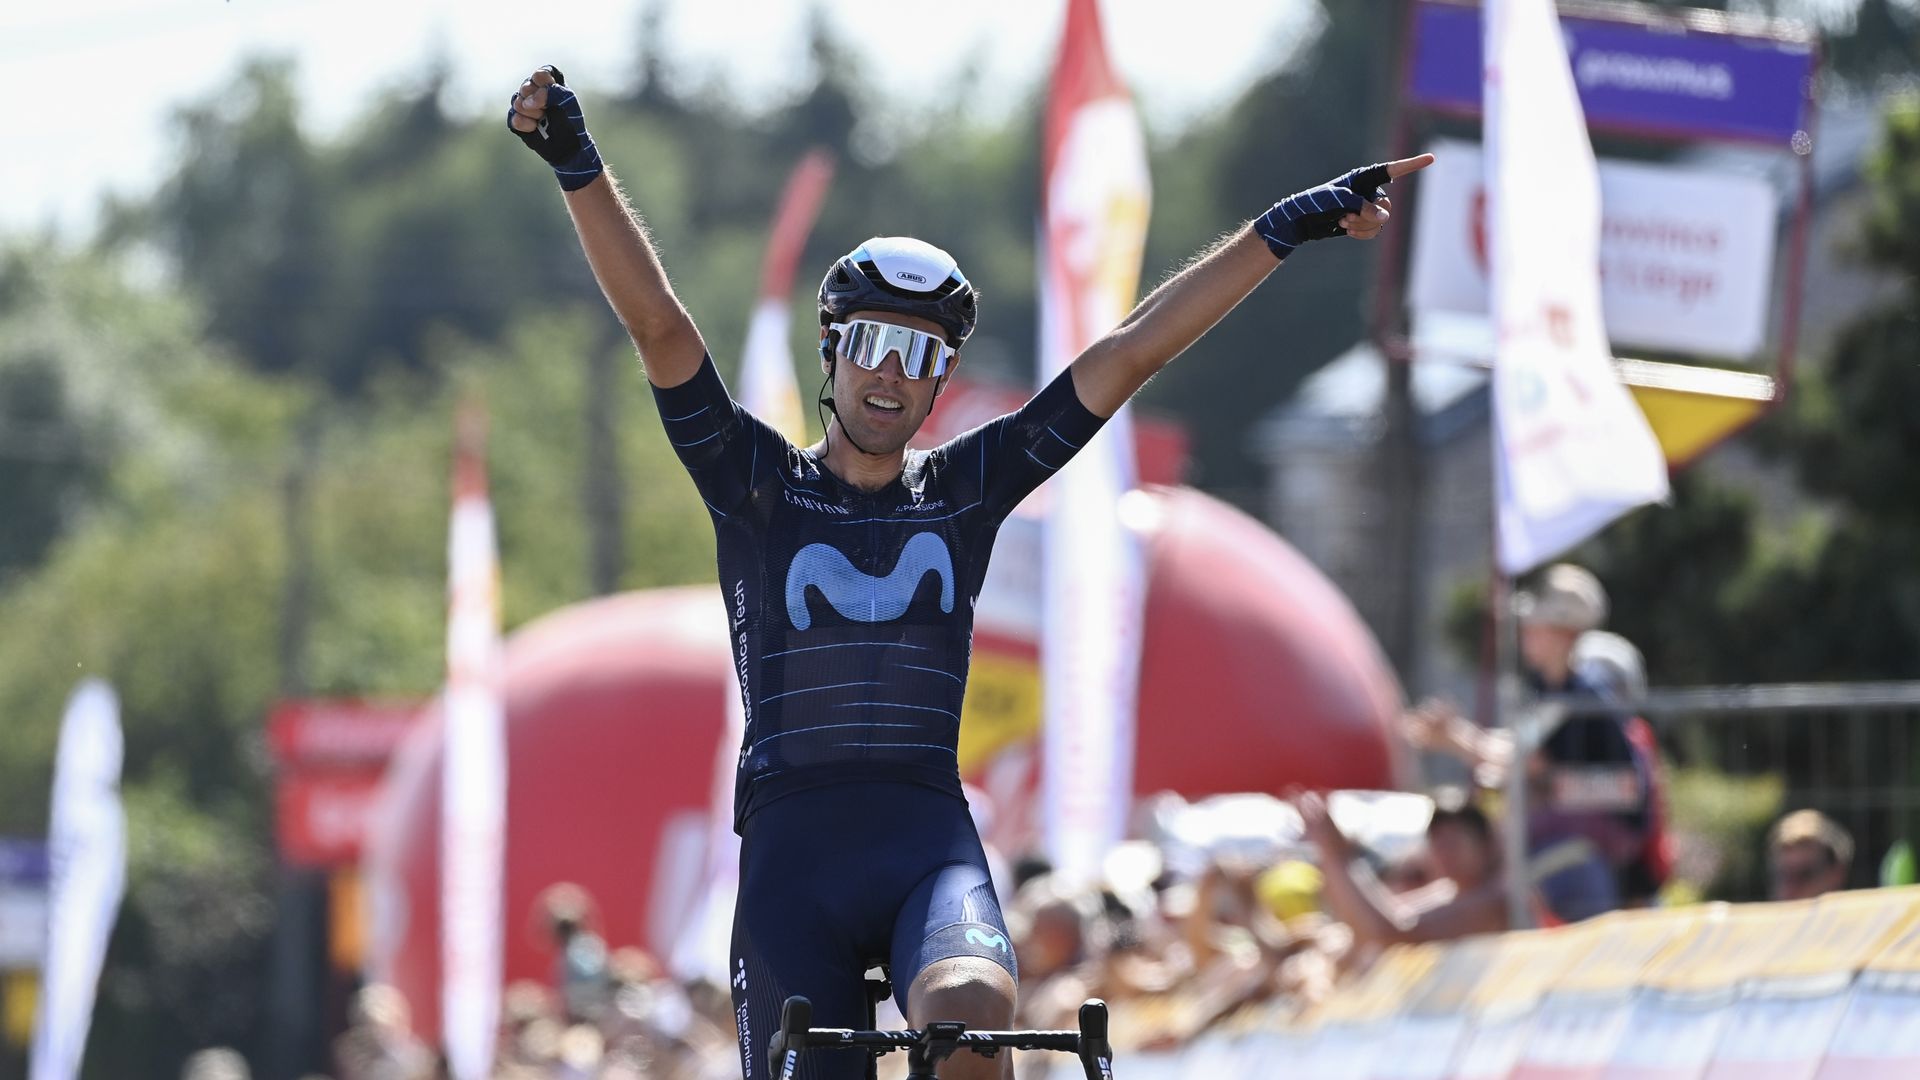 Oier Lazkano remporte la 2e étape, la plus belle victoire de sa carrière